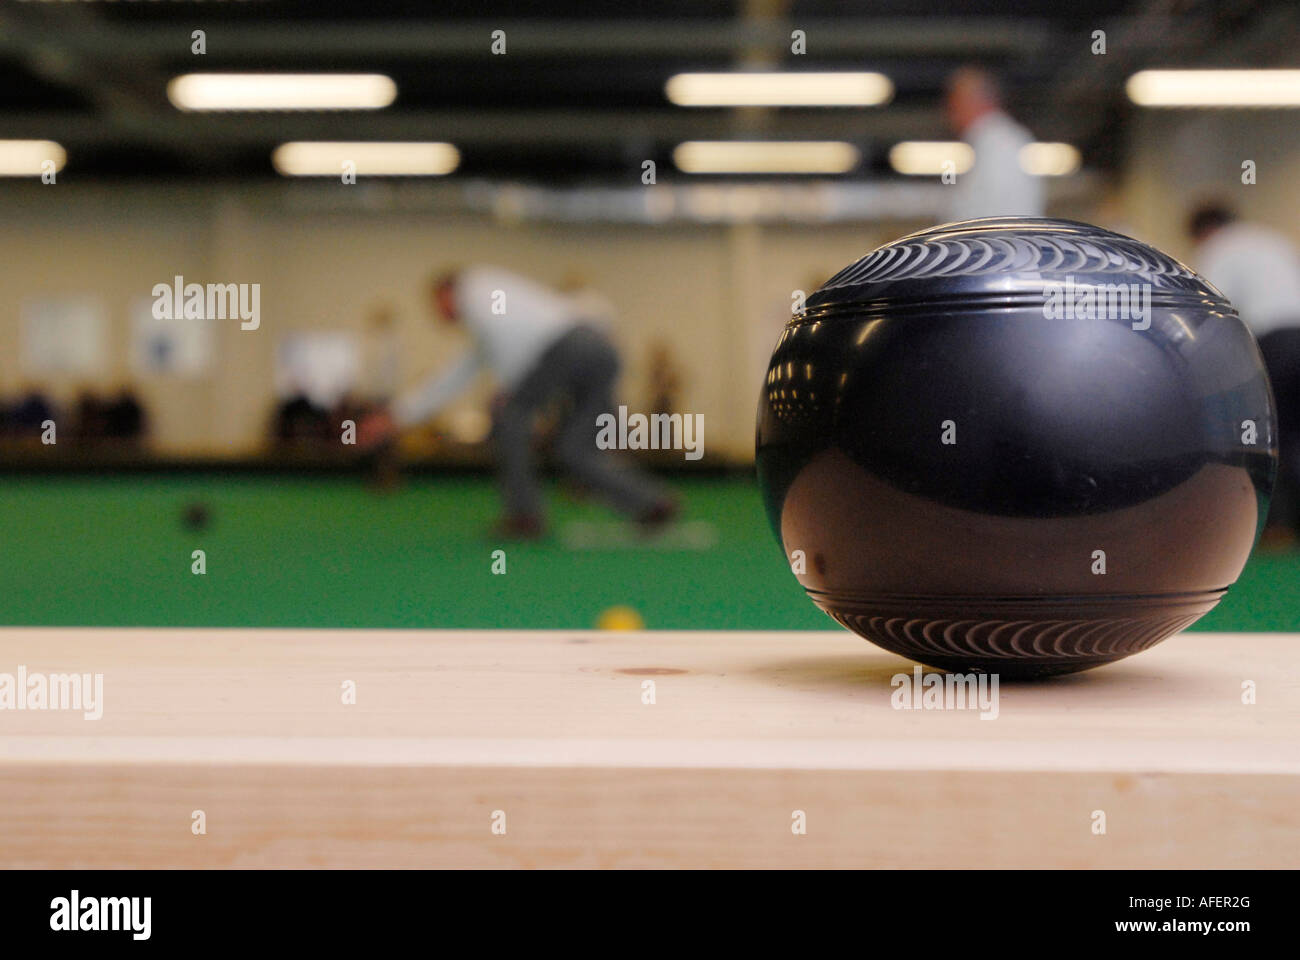 Bowling ball at an indoor bowls green Stock Photo